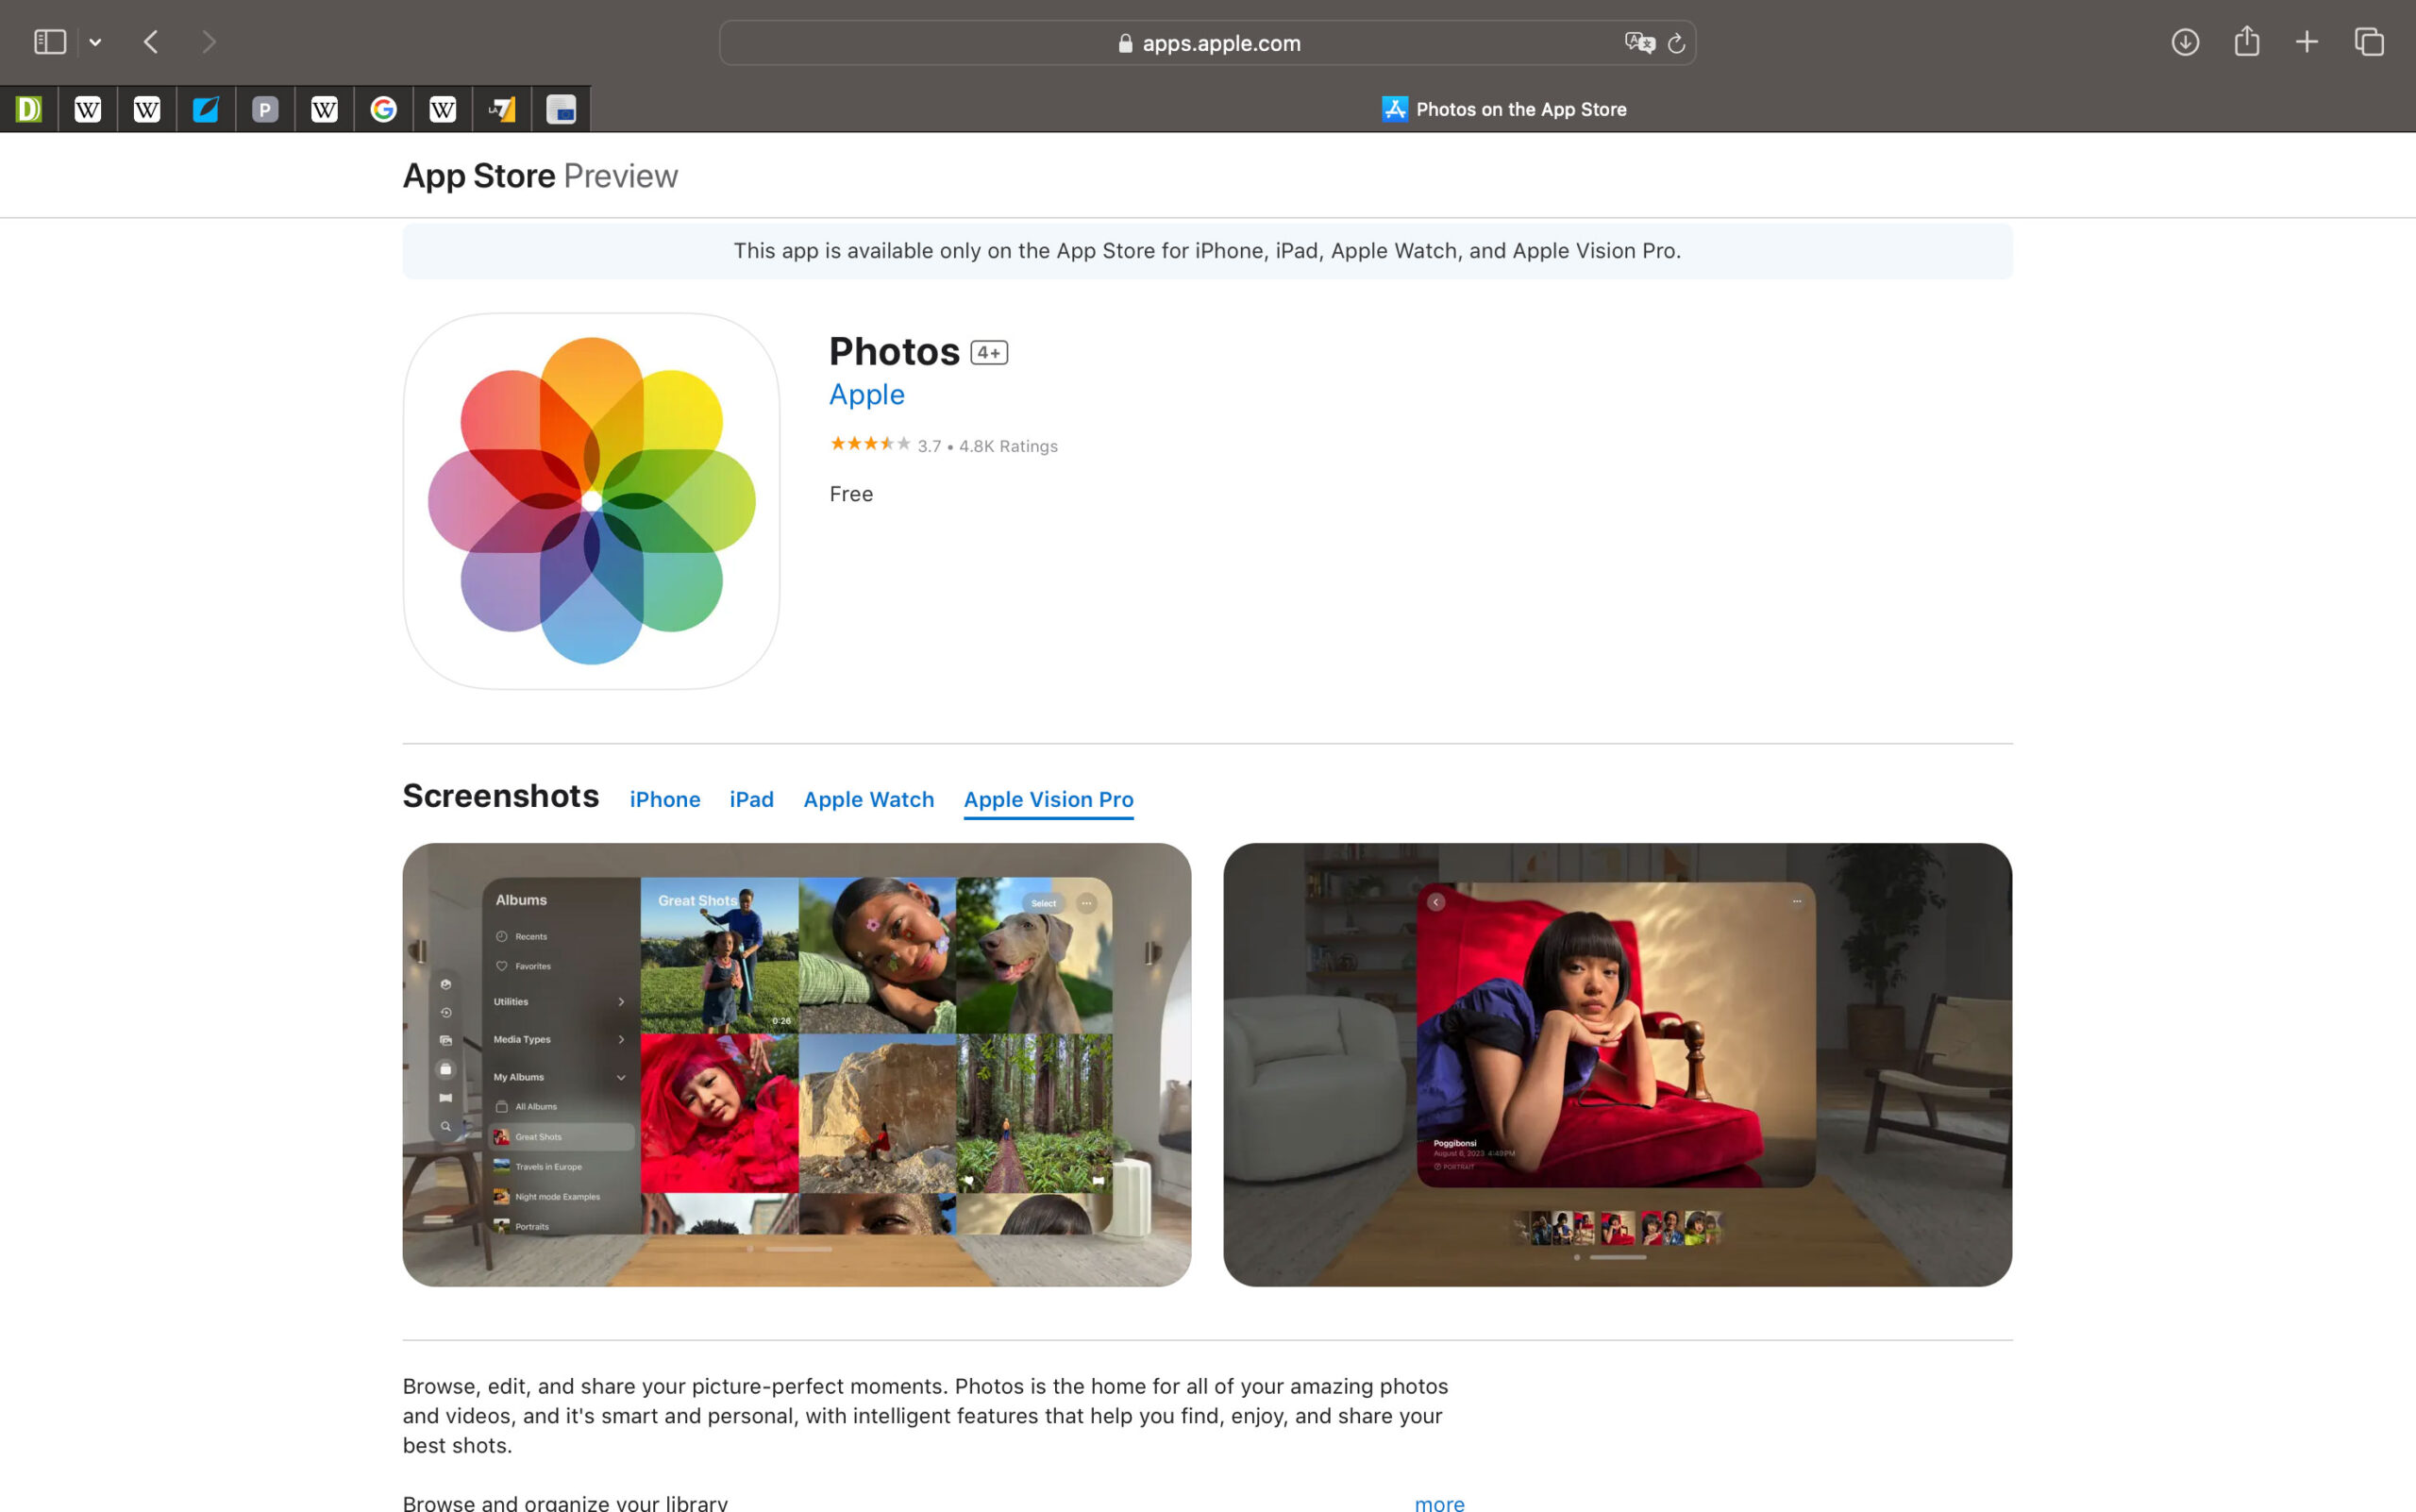 Le app per Vision Pro ora visibili da browser come Anteprima App Store